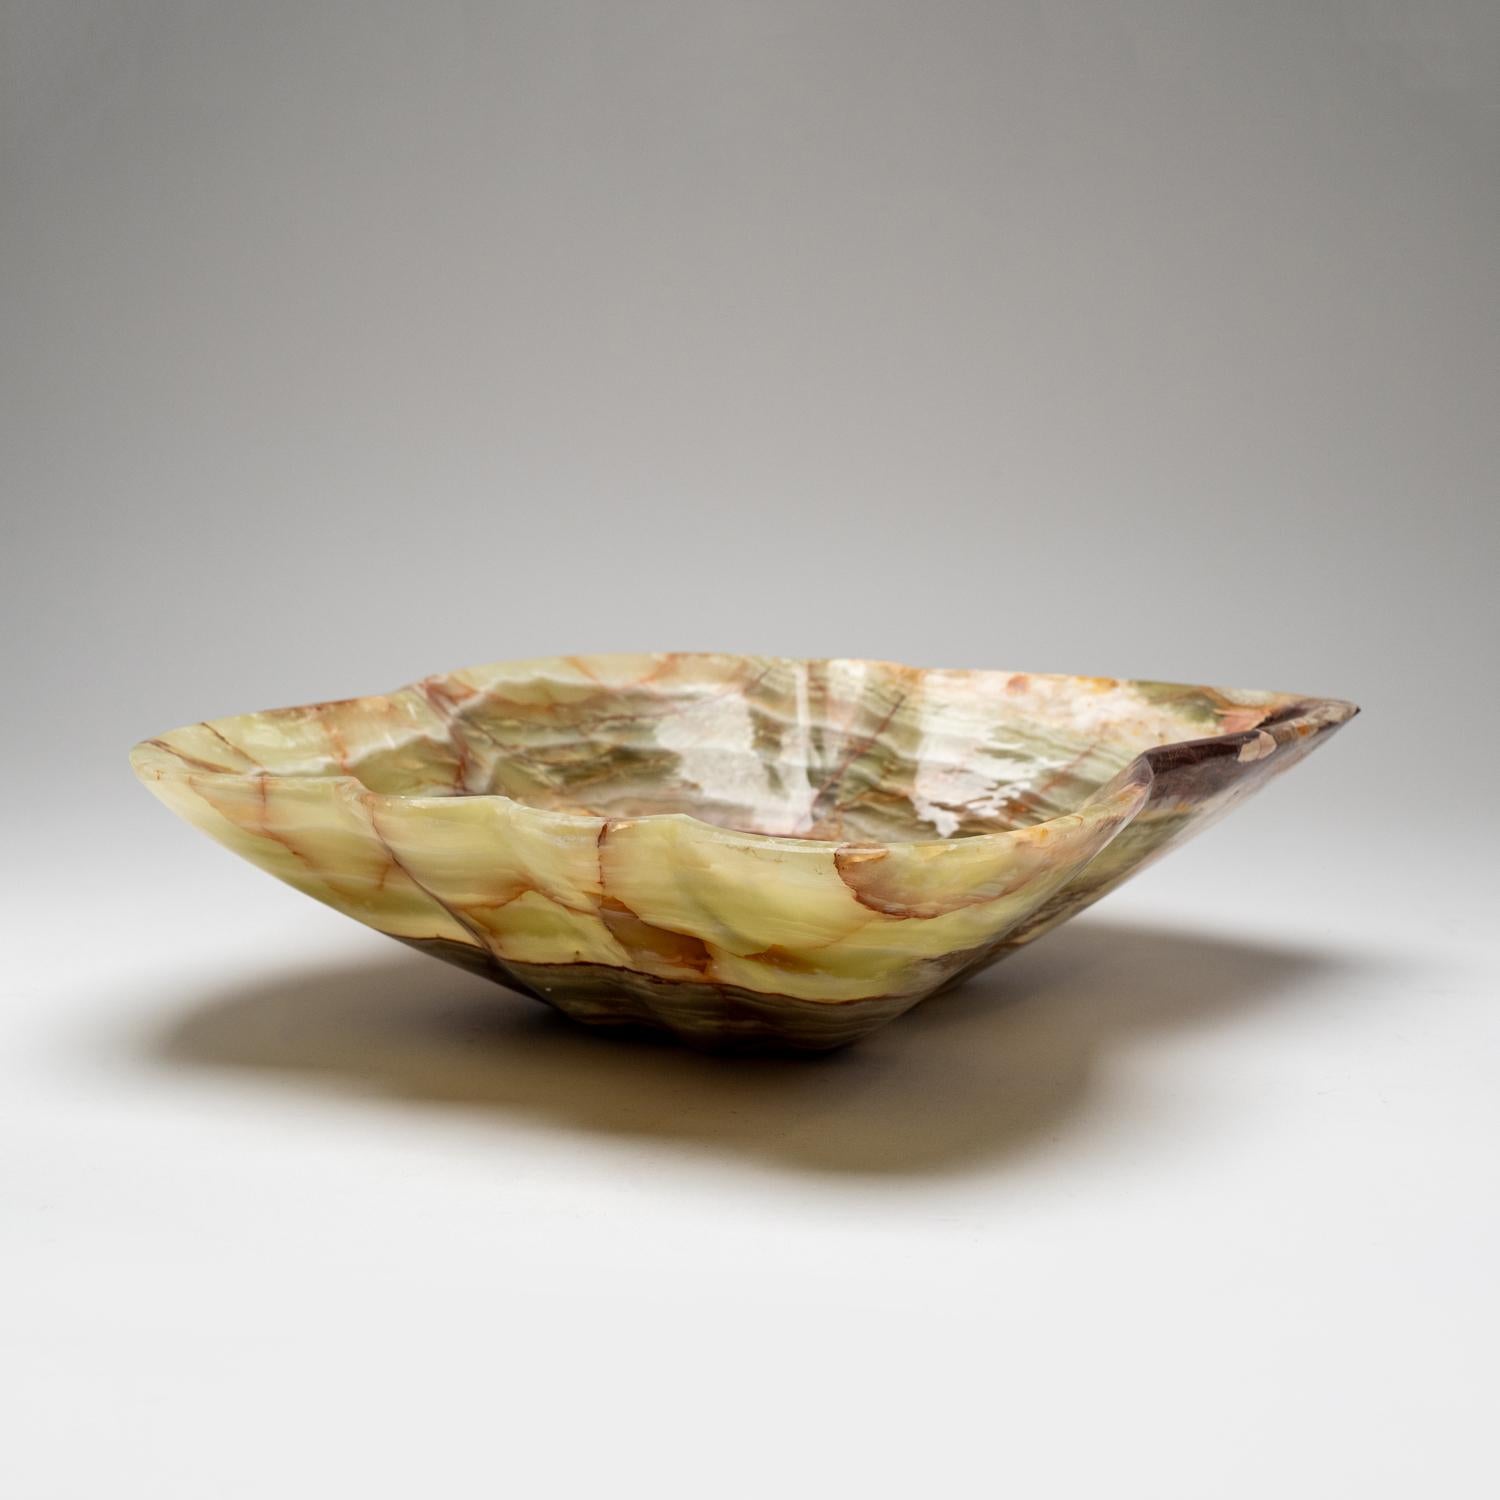 Diese einzigartige dekorative Schale in freier Form, die aus einem einzigen Stück natürlichen Onyx gefertigt ist, besticht durch ihre hochglanzpolierte Oberfläche und ihre satten, erdigen Farbtöne, die Weiß-, Honig- und Brauntöne mischen. Mit seinem